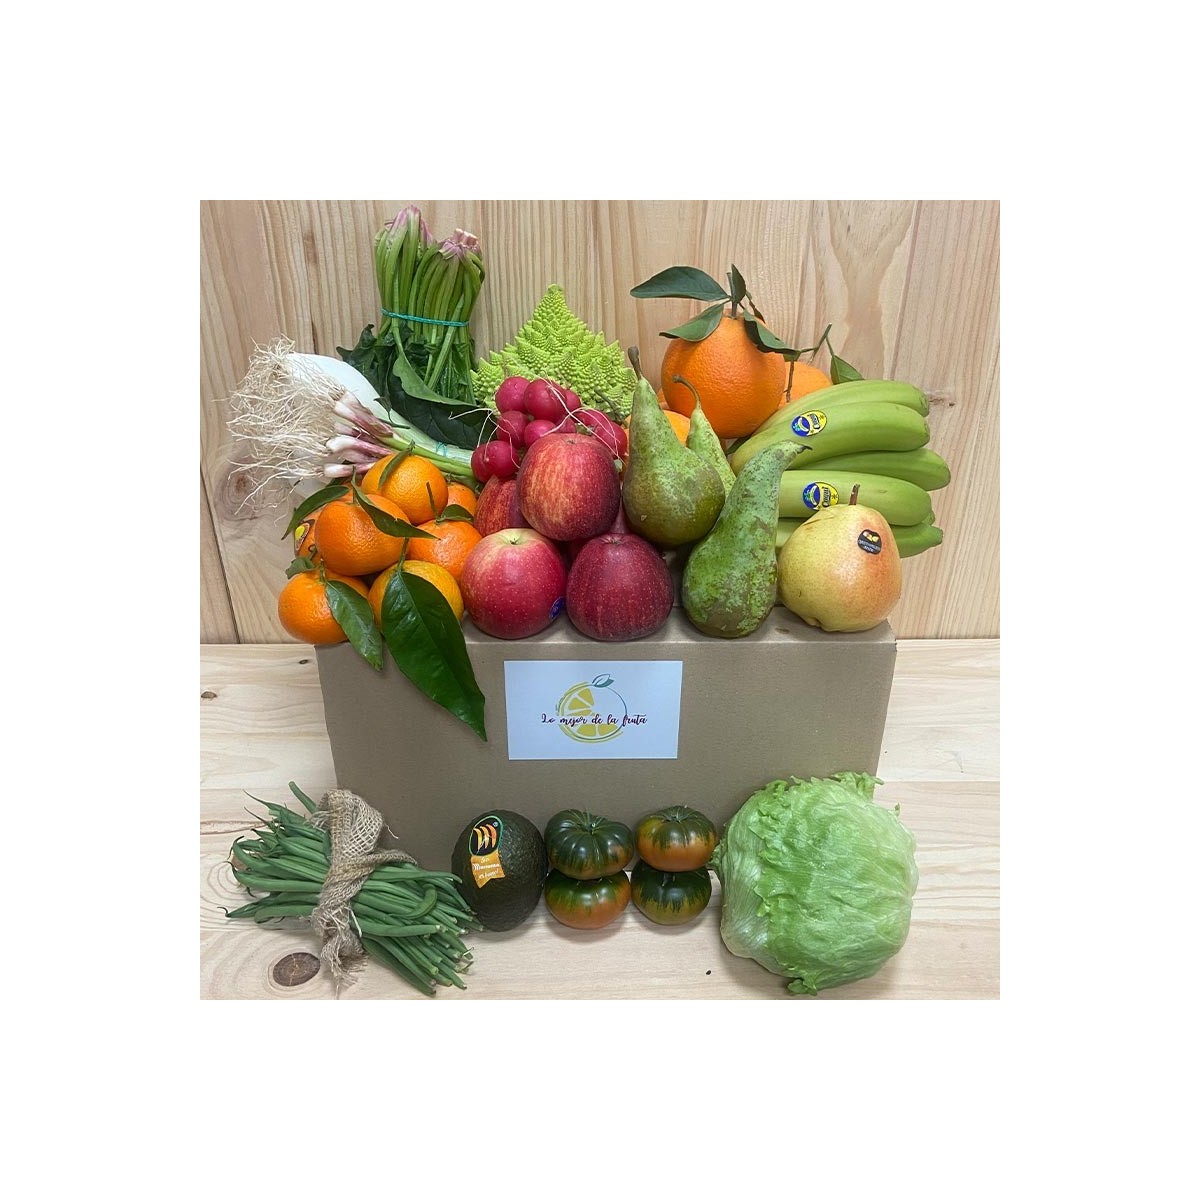 Pack Febrero, Marzo - Packs Frutas y Verduras -1- Lo mejor de la fruta